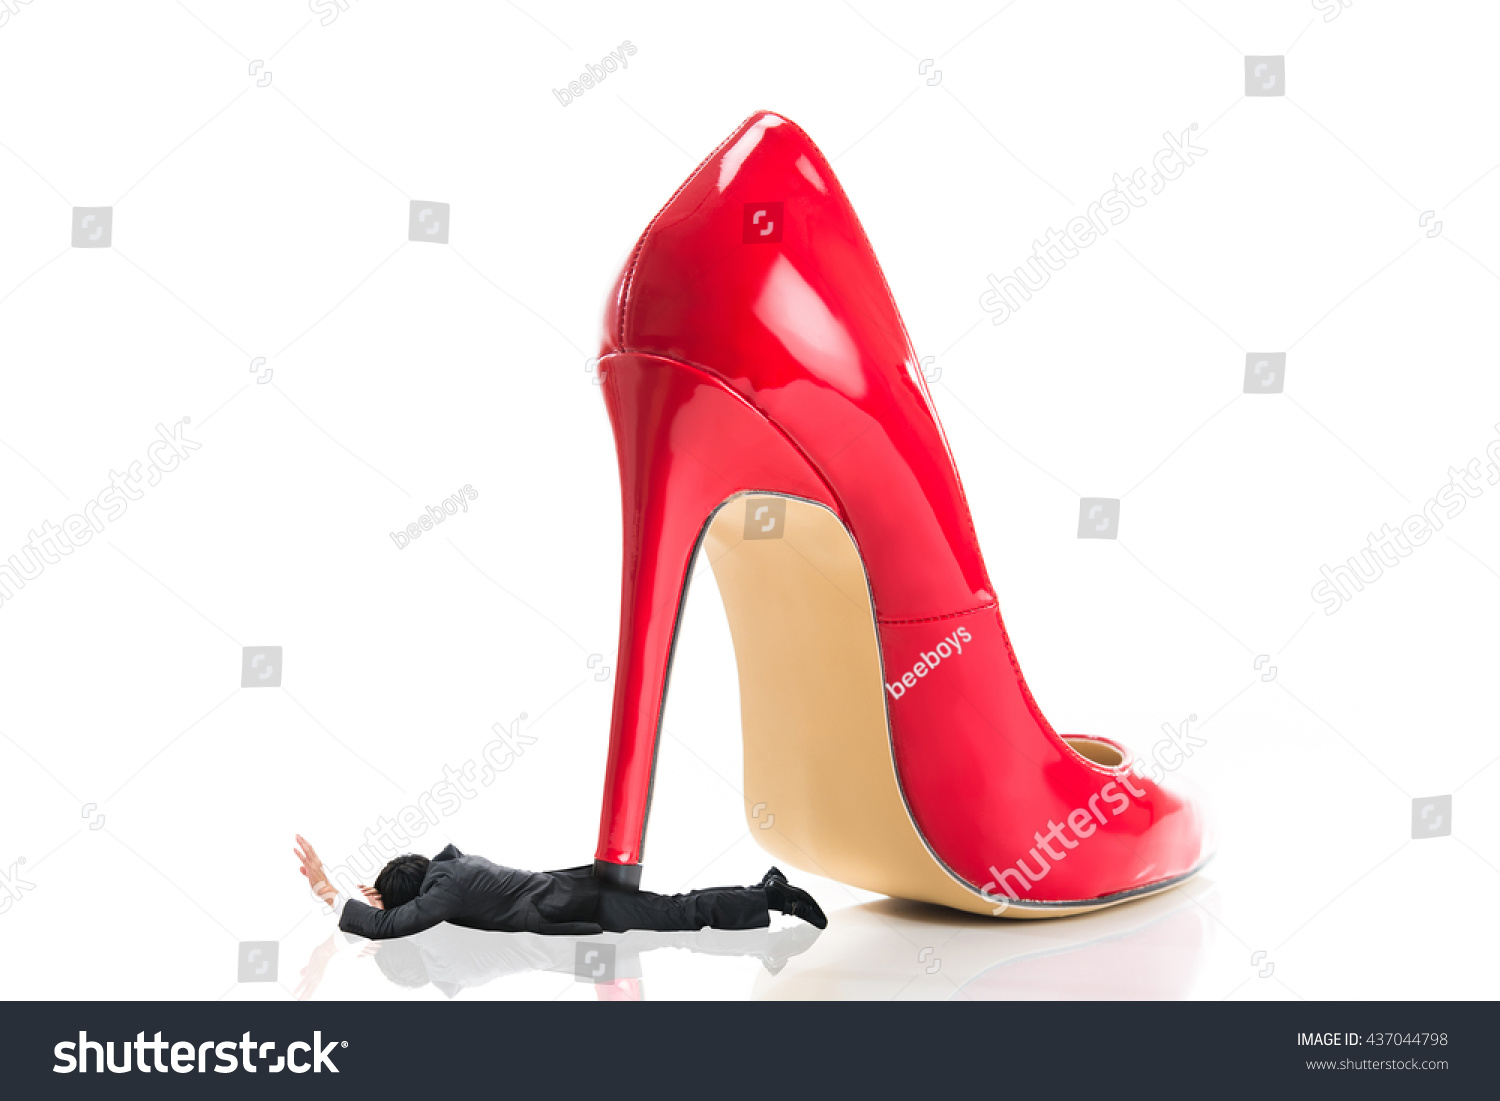 red under heels